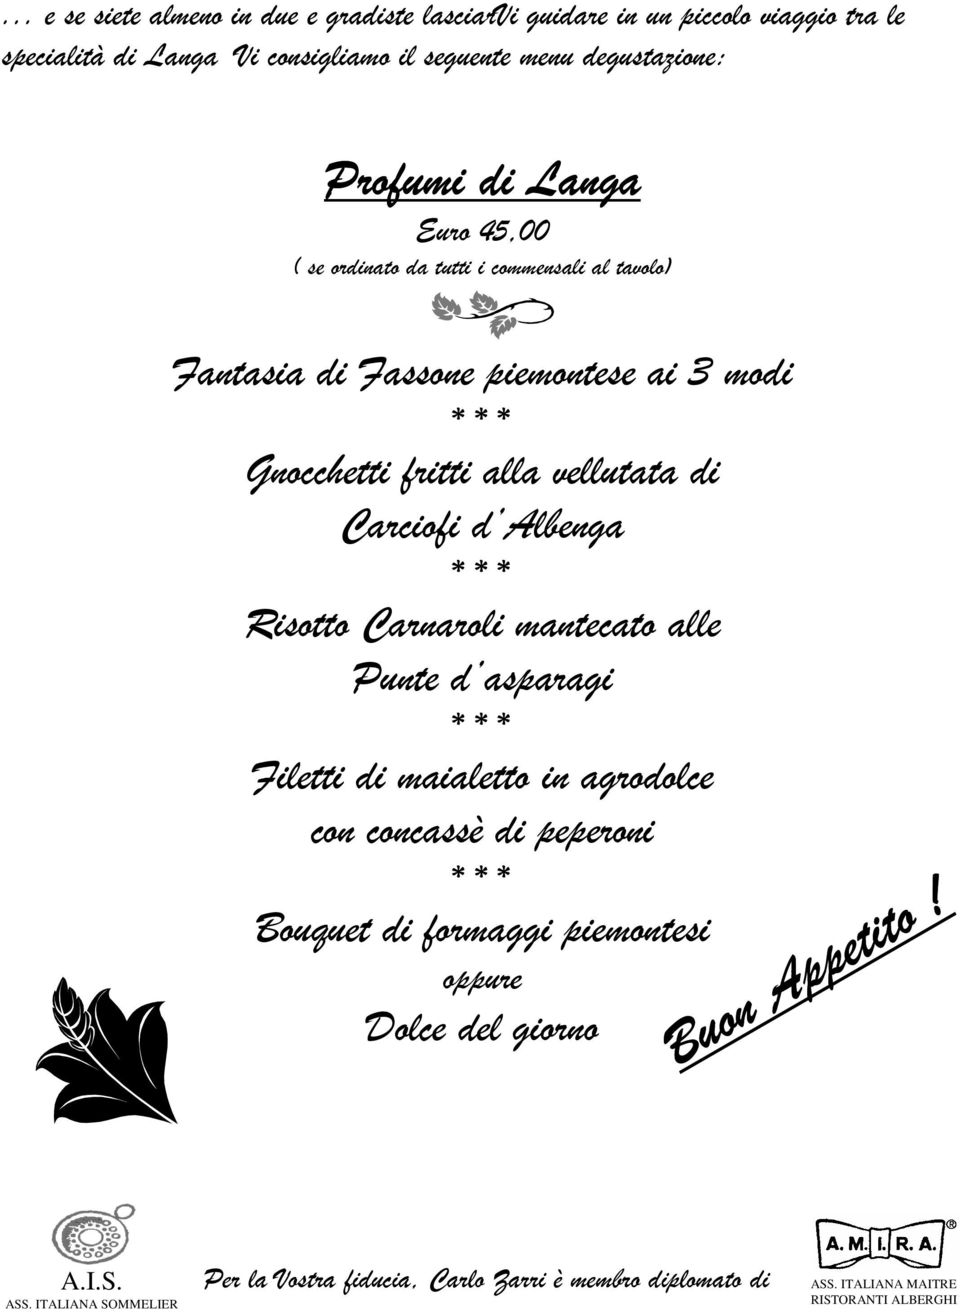 Carciofi d Albenga Risotto Carnaroli mantecato alle Punte d asparagi Filetti di maialetto in agrodolce con concassè di peperoni Bouquet di formaggi